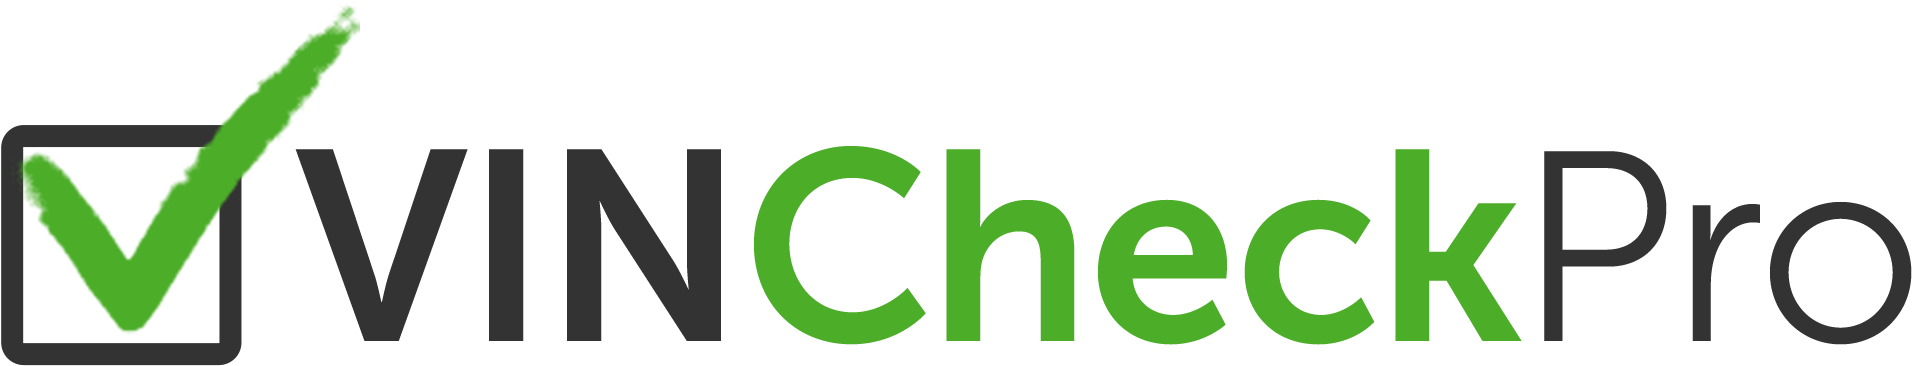 Vin Check Pro Logo (2000x450), Png Download